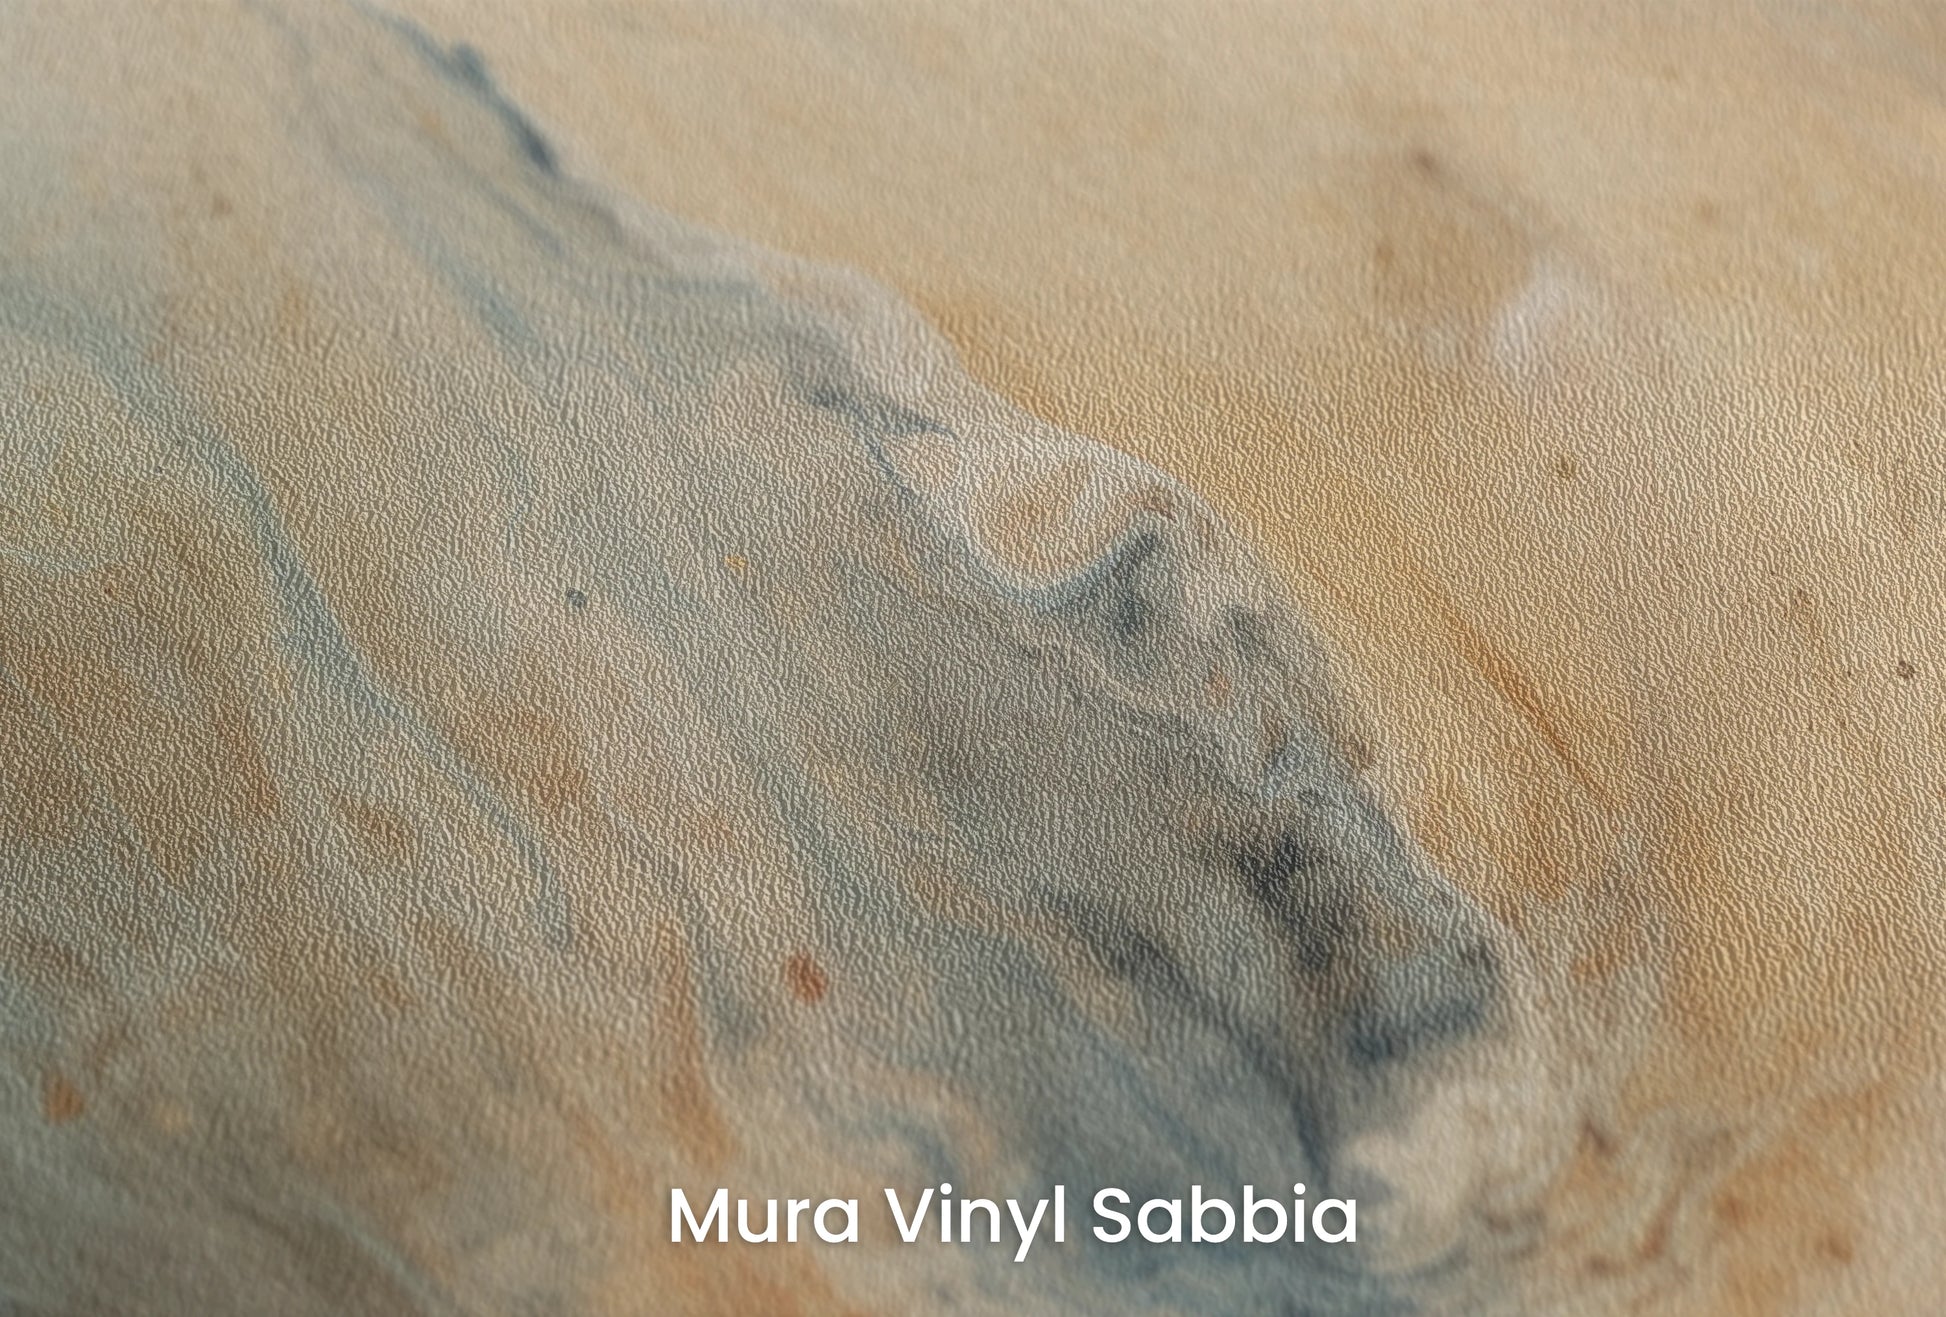 Zbliżenie na artystyczną fototapetę o nazwie Jupiter's Storm #2 na podłożu Mura Vinyl Sabbia struktura grubego ziarna piasku.